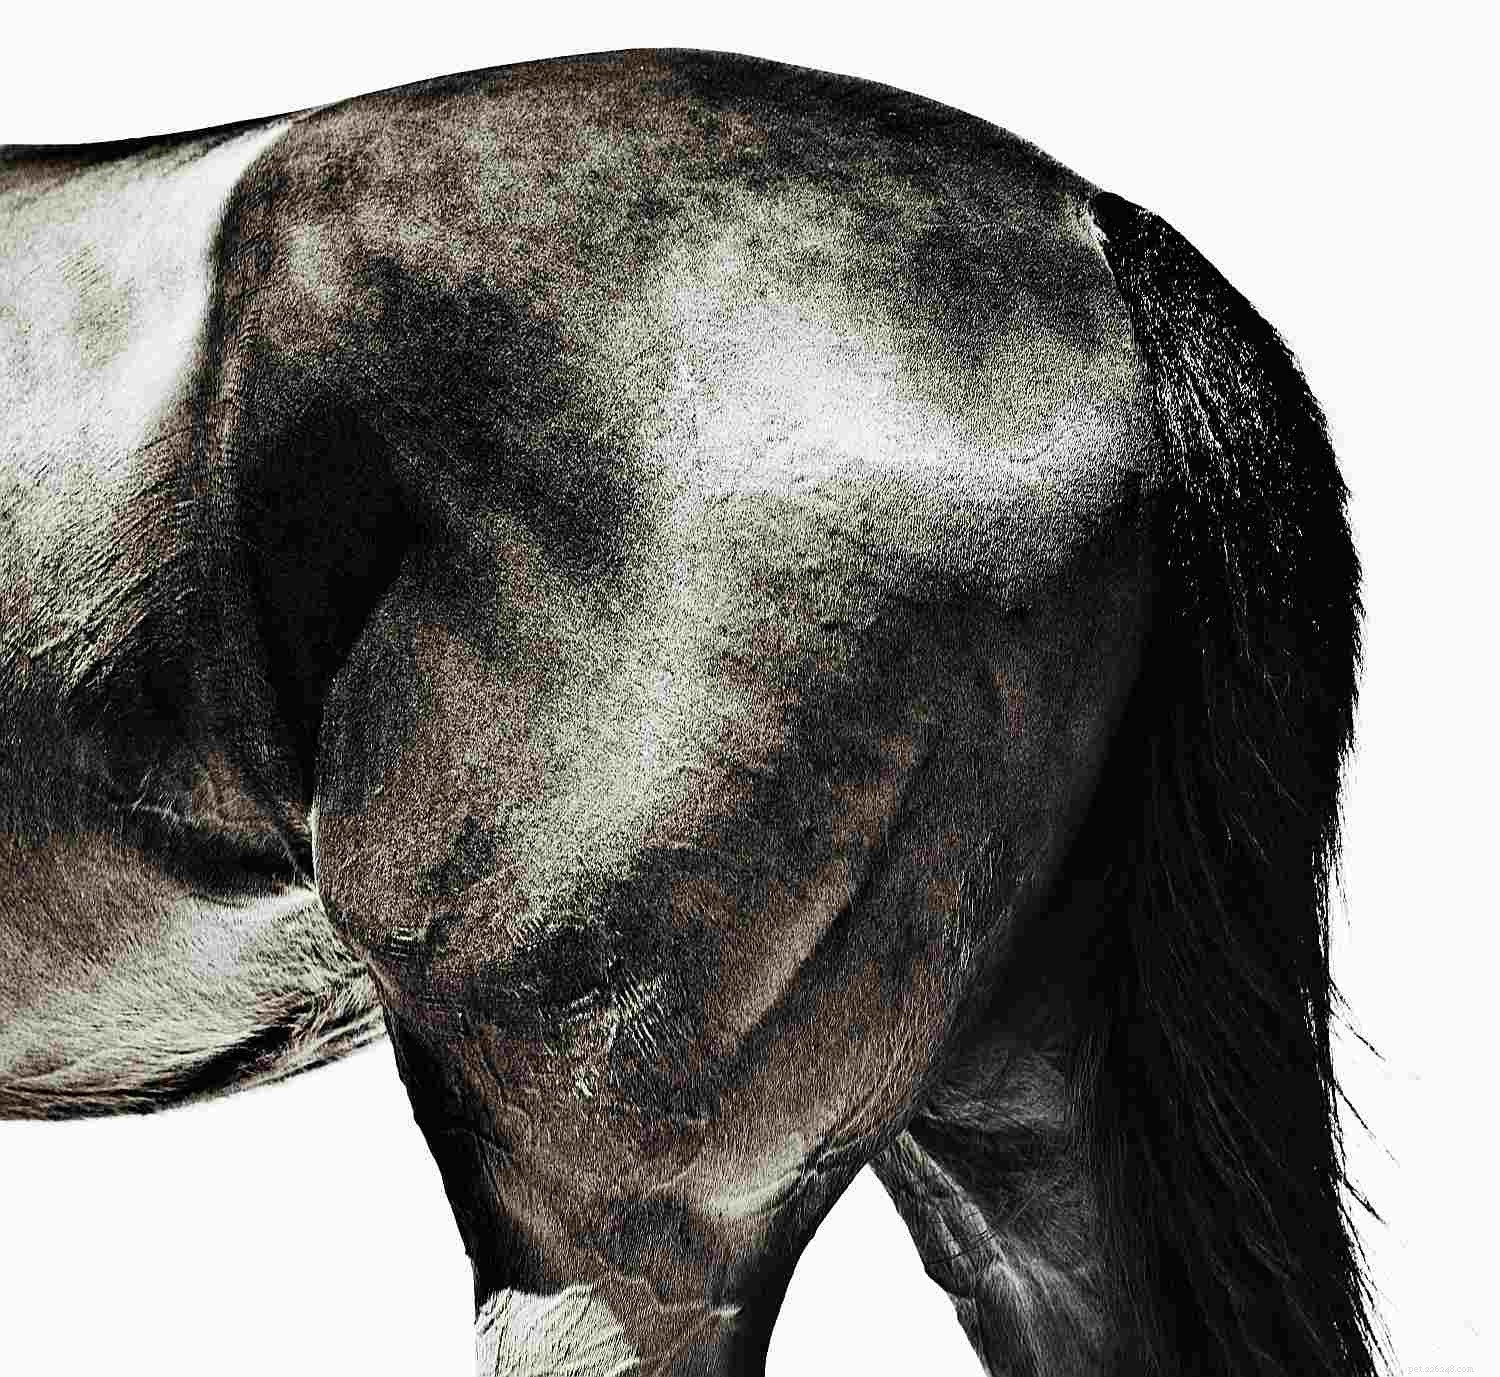 Een fotogids voor de verschillende onderdelen van een paard